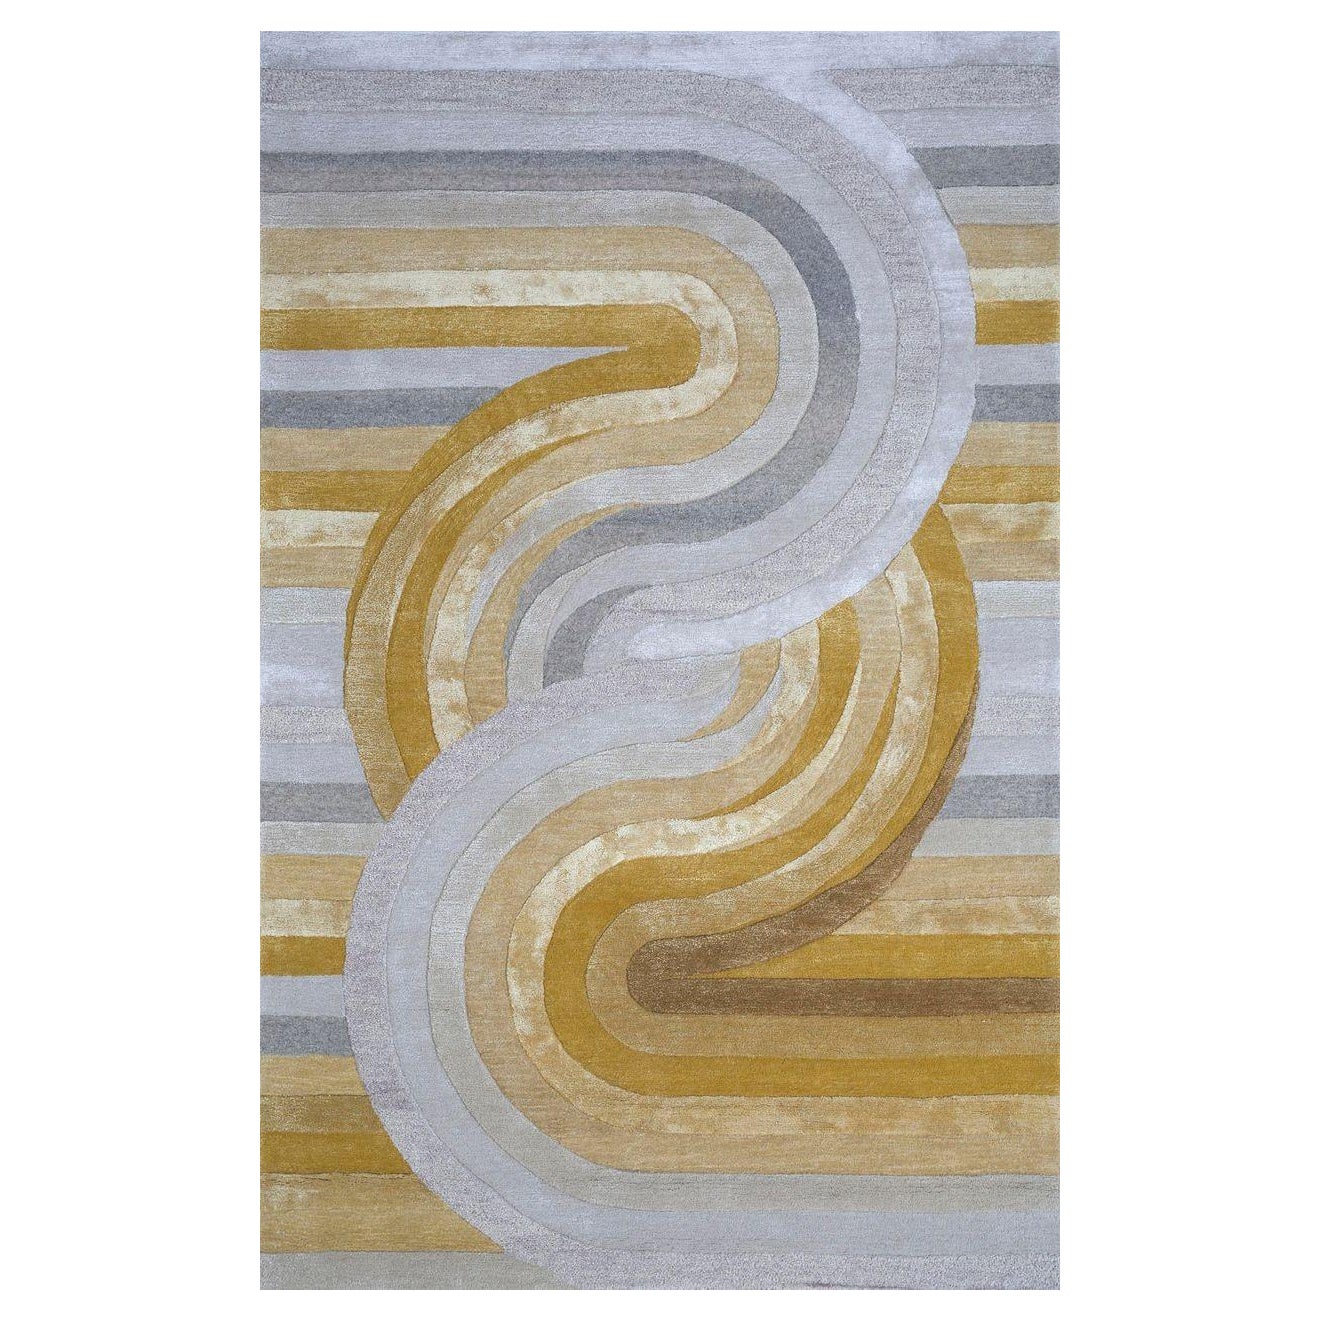 Transcendent Culture Fusion Dark Amber Gold & White 180x270 cm Handtufted Rug For Sale